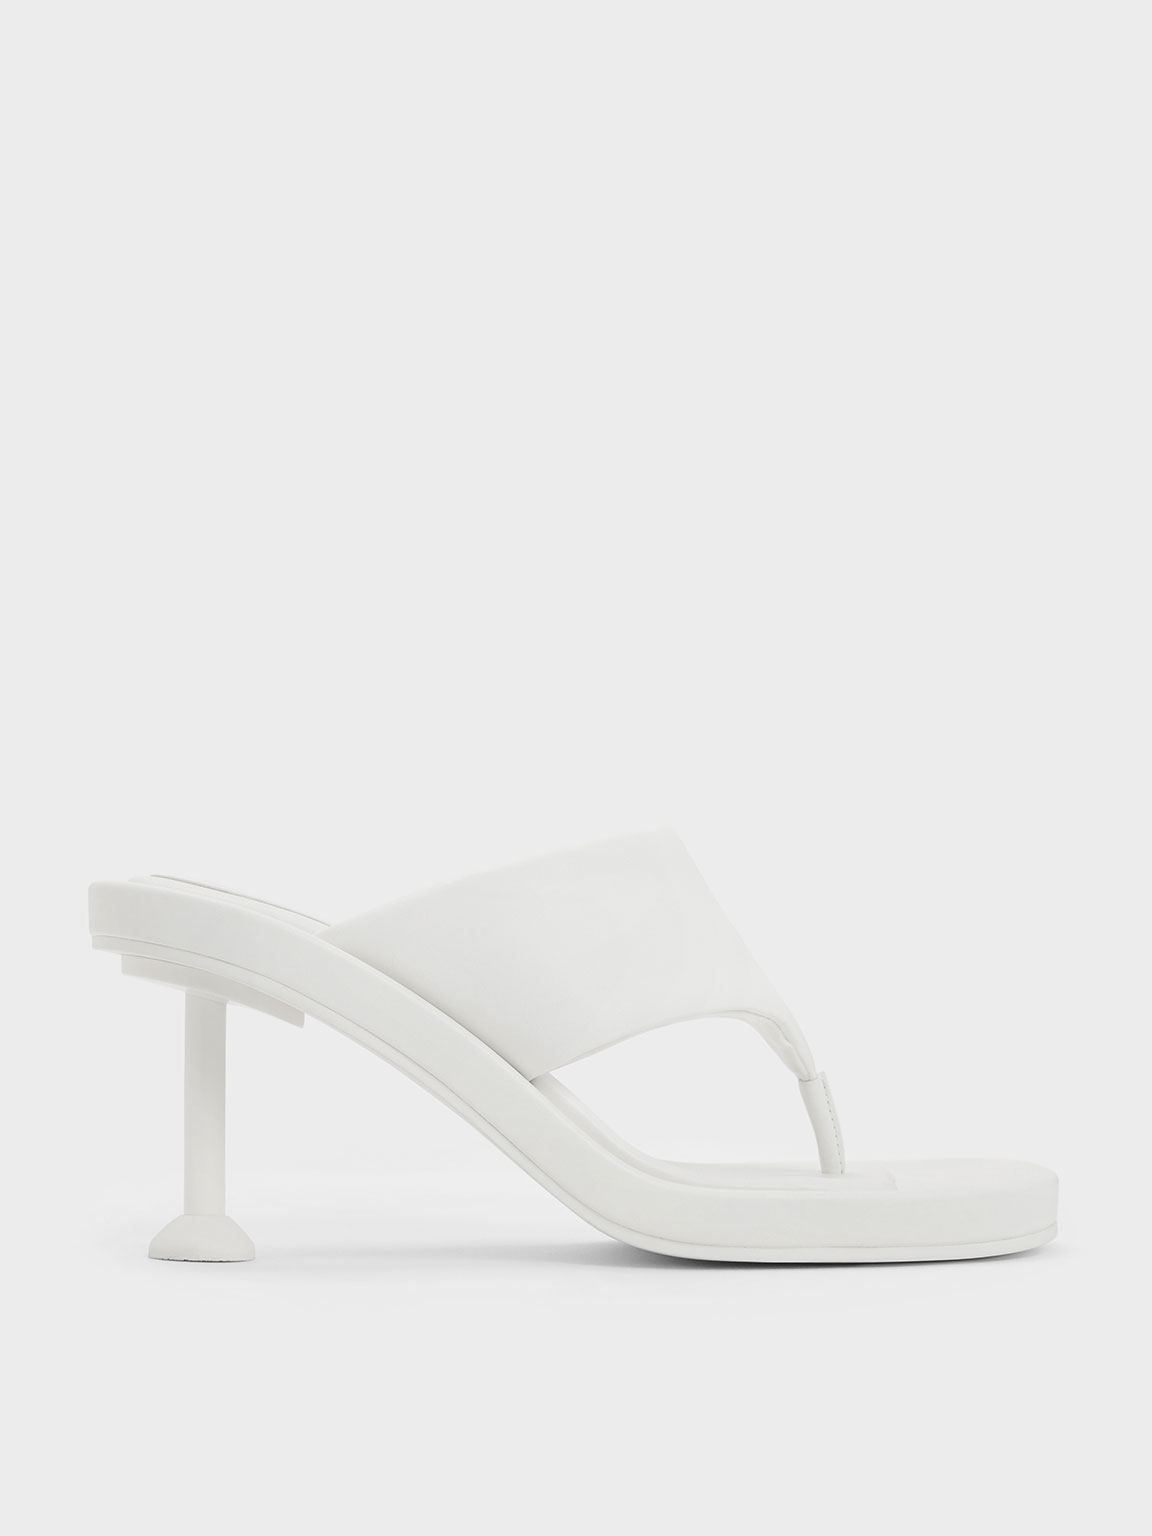 Charles & Keith Noemi Spool Heel Sandals In White